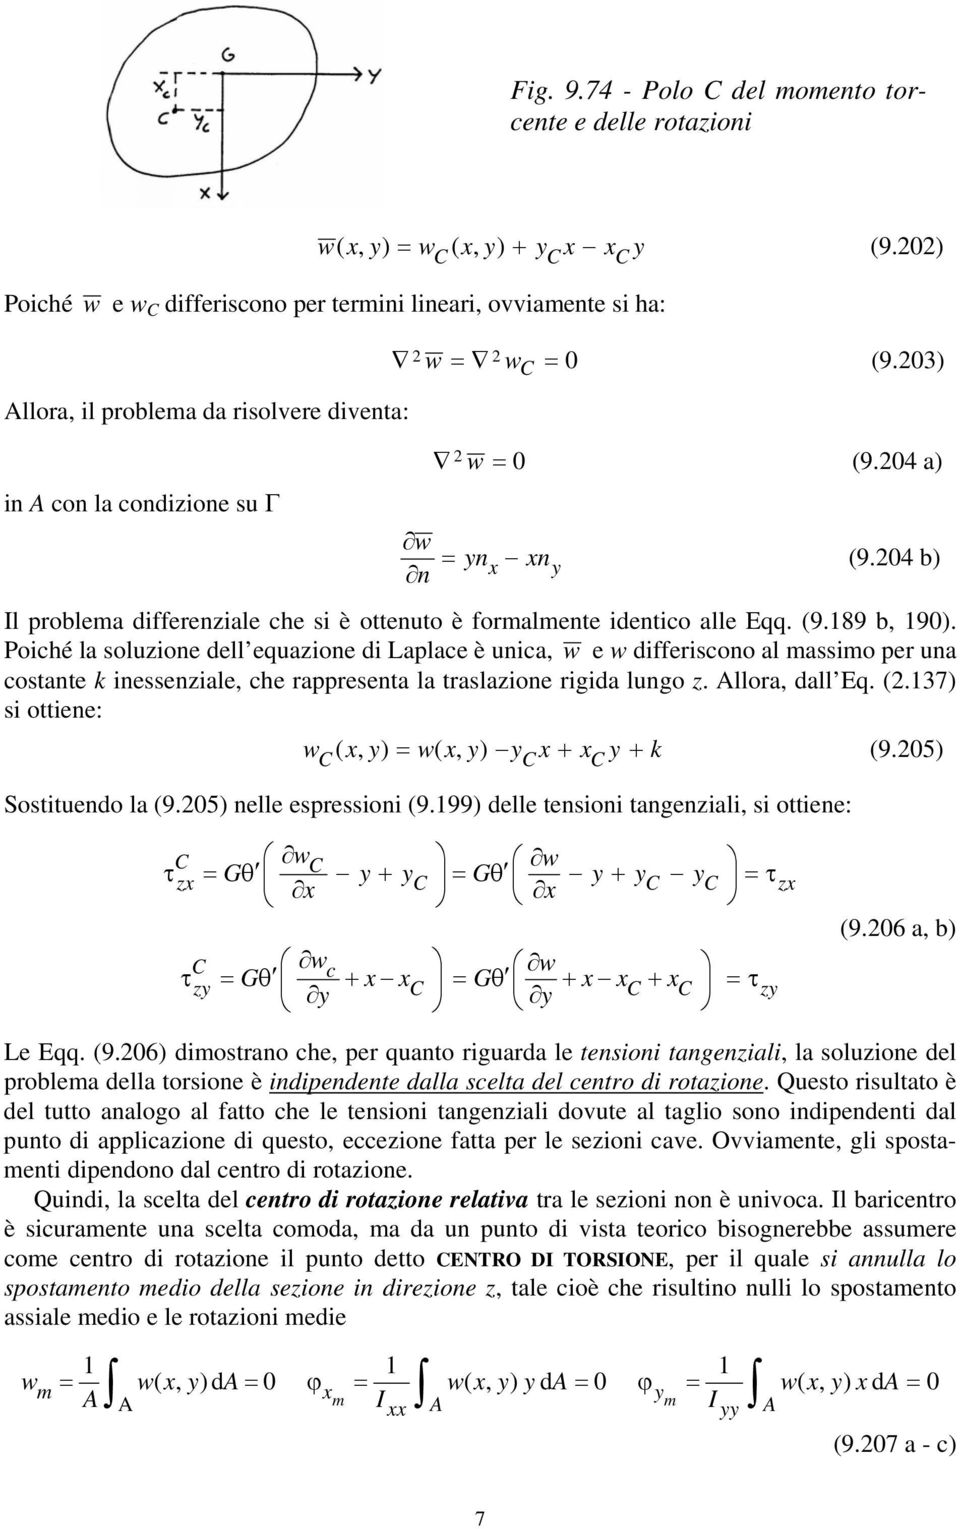 Poiché la oluzione dell equazione di Laplace è unica, w e w differicono al maimo per una cotante ineenziale, che rappreenta la tralazione rigida lungo z. llora, dall Eq. (.